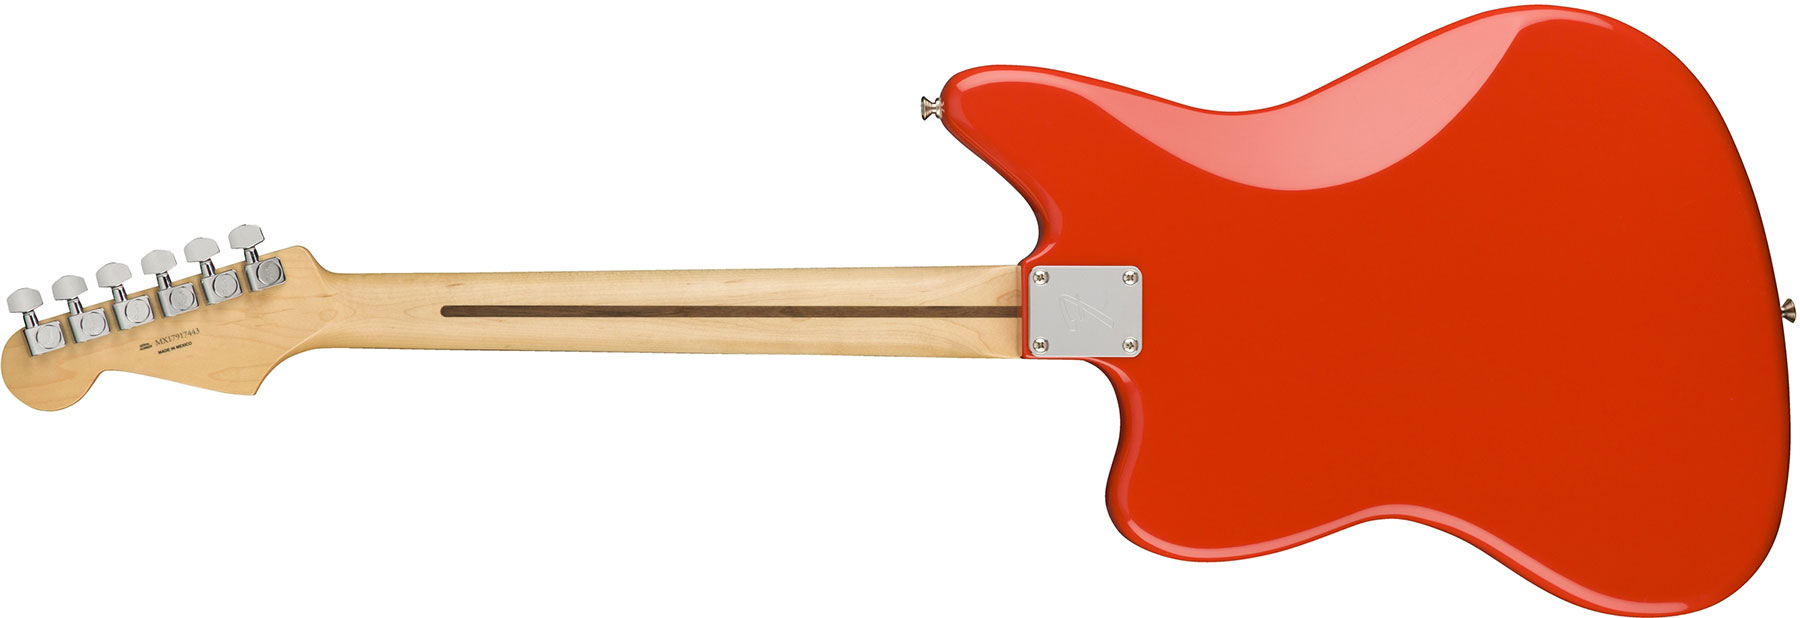 Fender Jaguar Player Mex Hs Pf - Sonic Red - Guitare Électrique RÉtro Rock - Variation 1